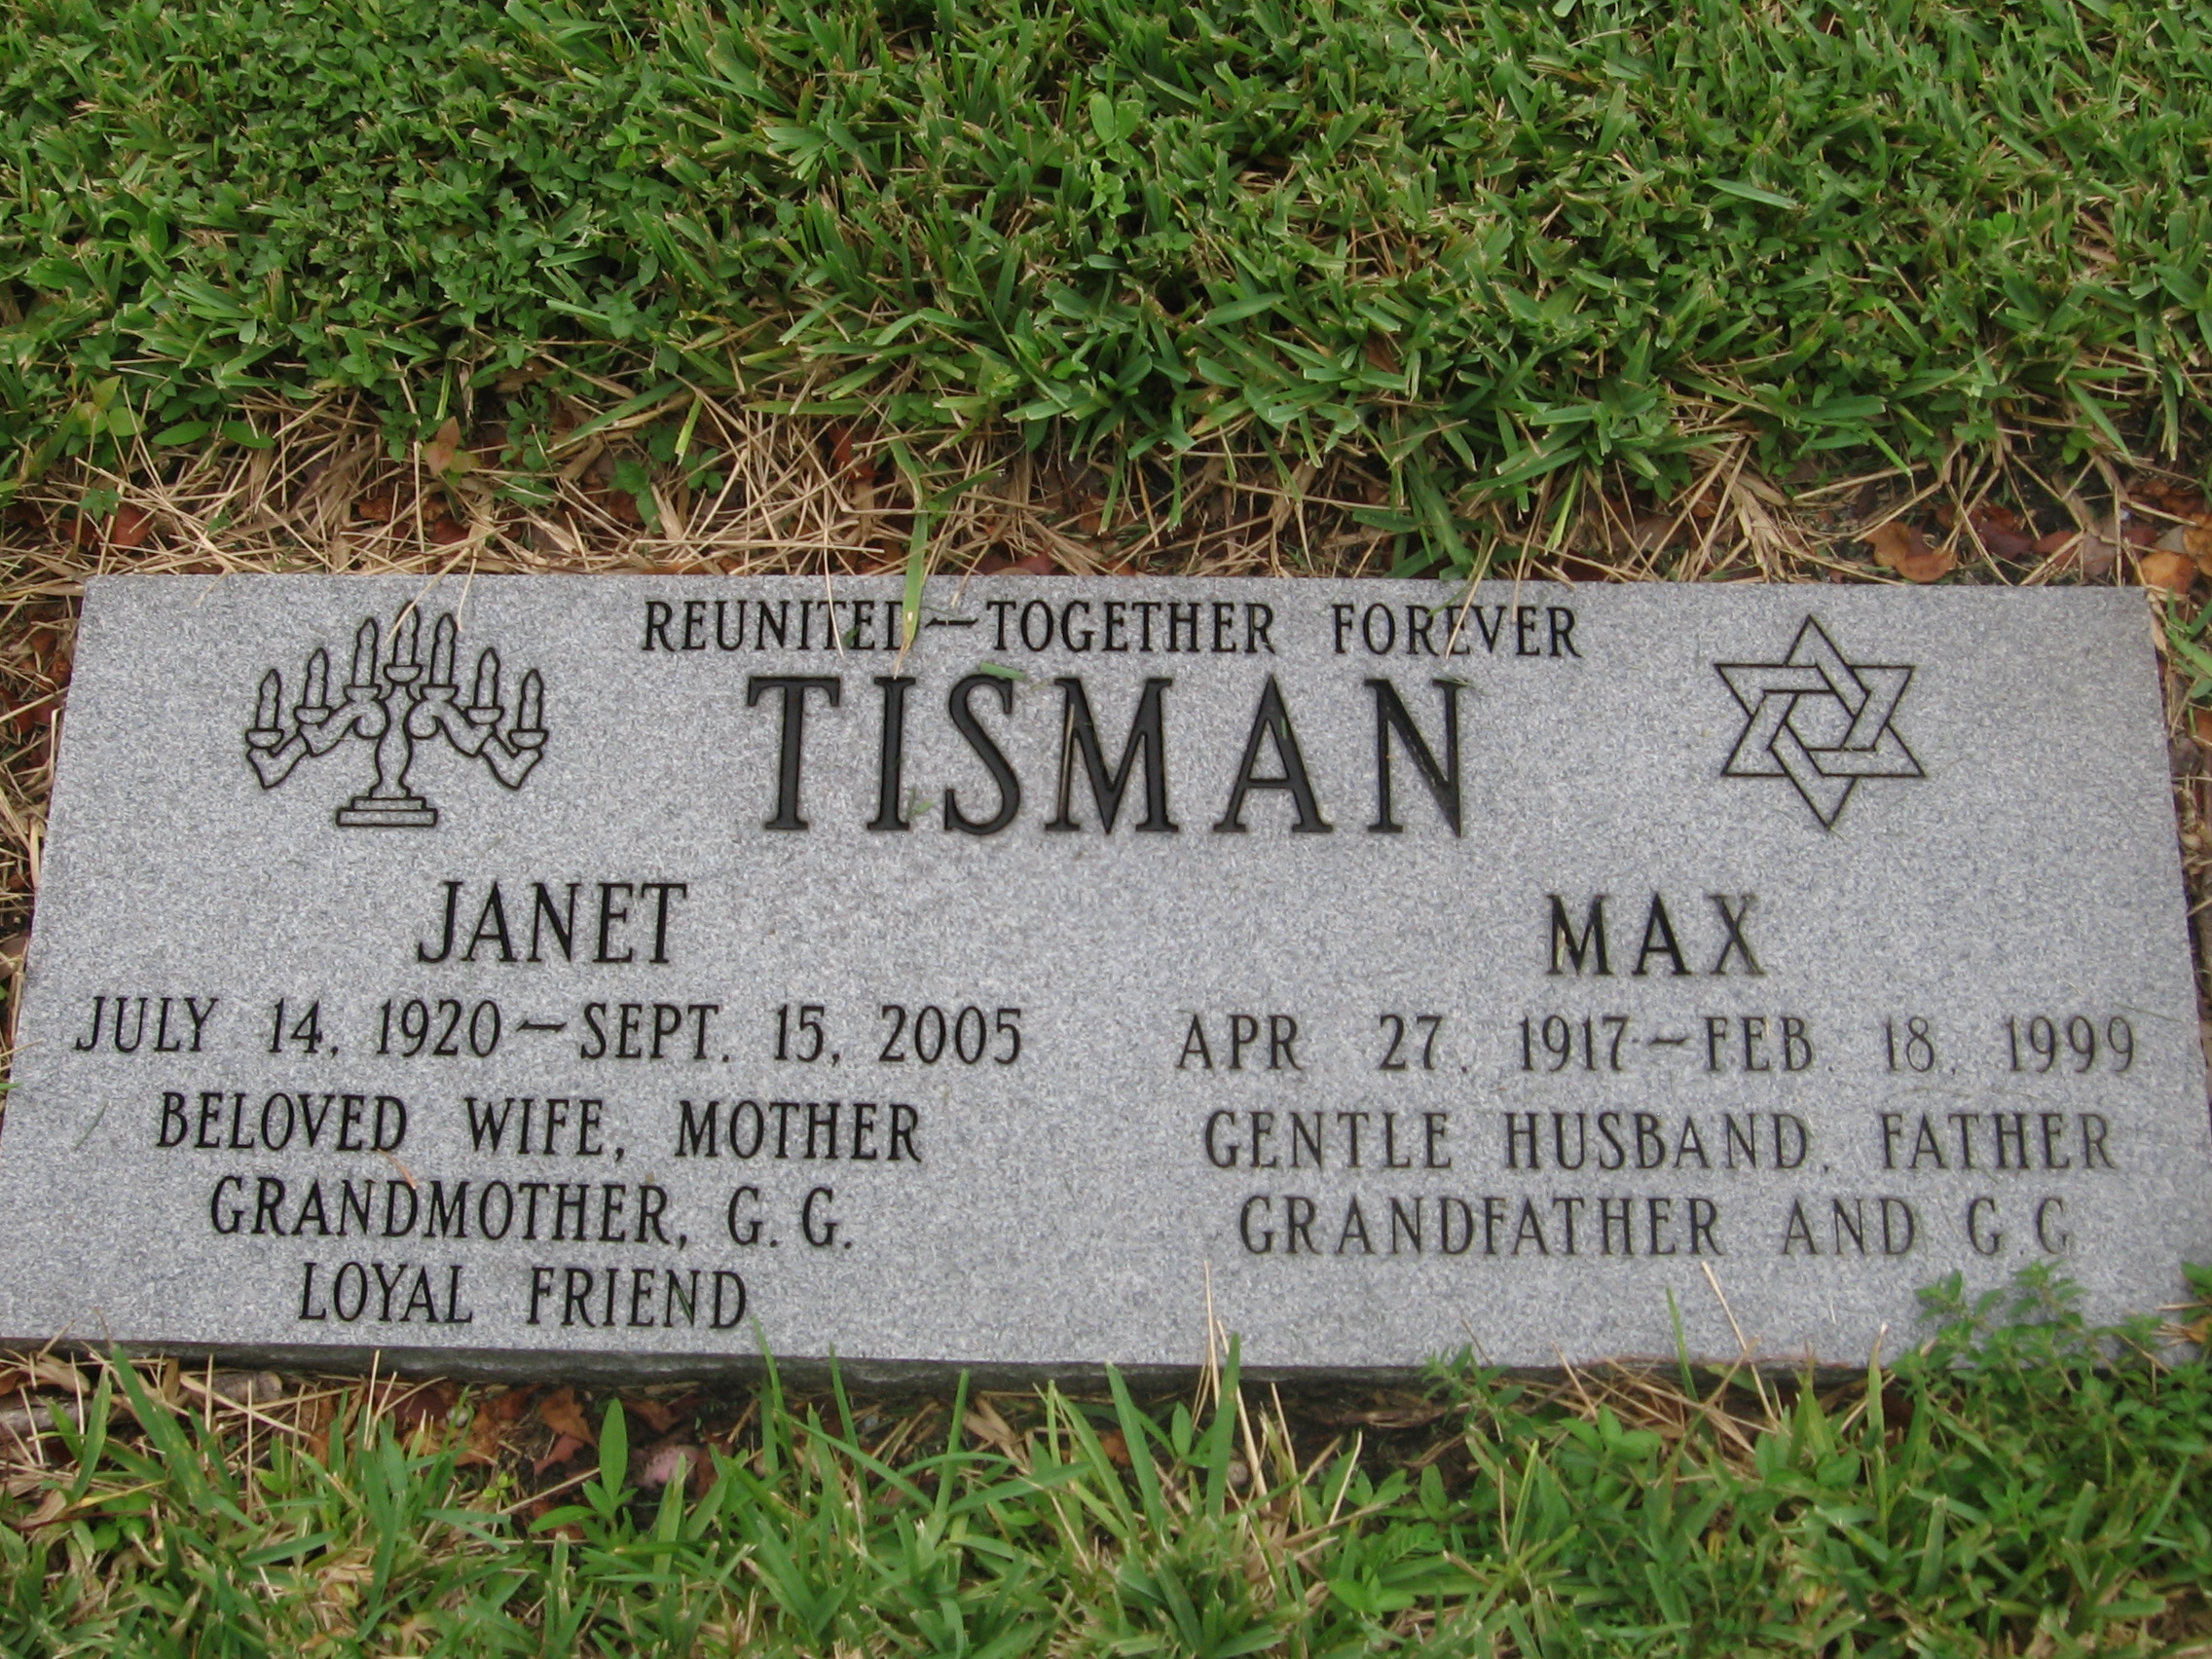 Janet Tisman